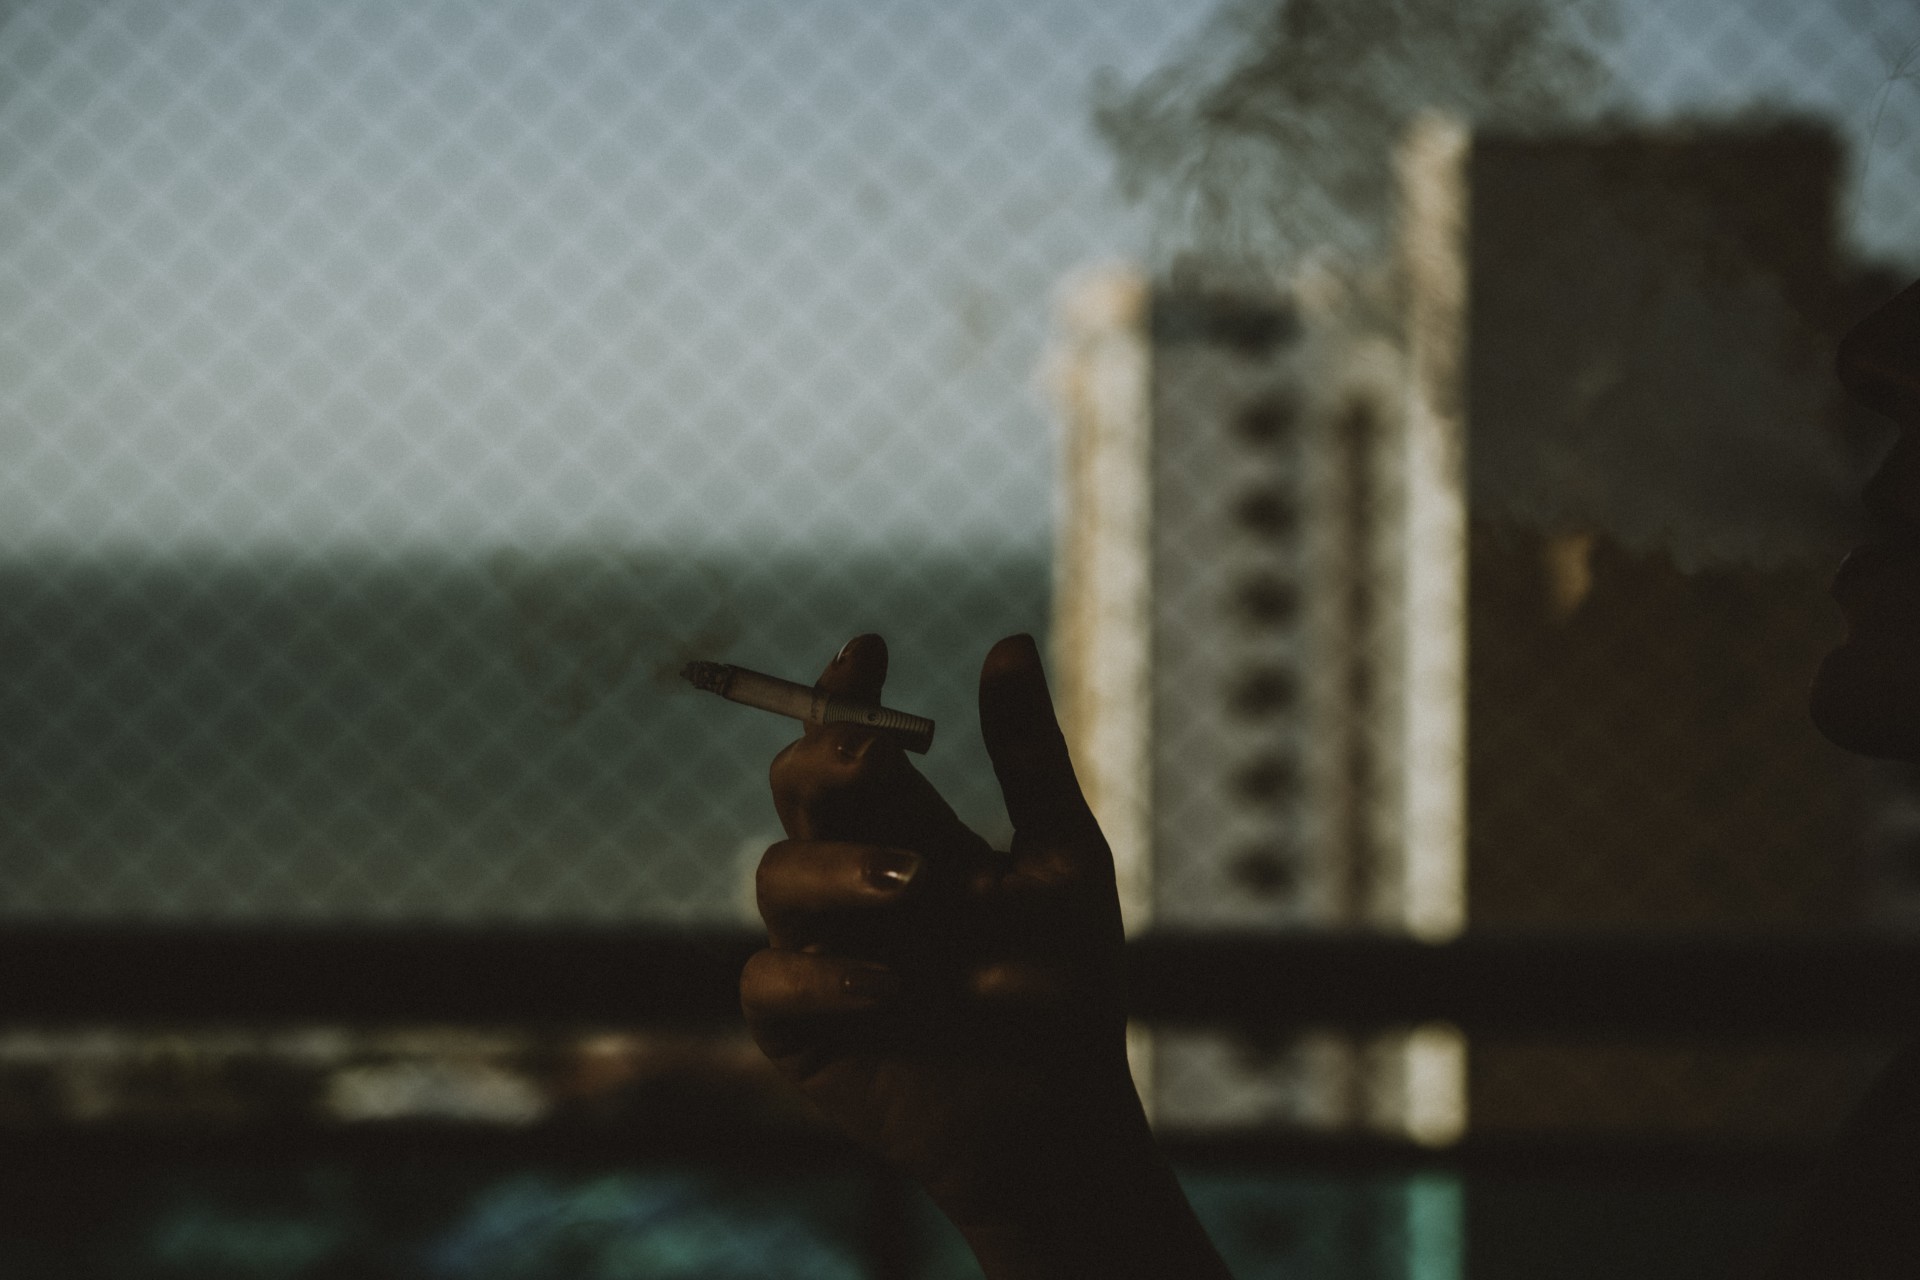 FORTALEZA - CE, BRASIL, 22-09-2020: Pessoa fumando com cigarro na mão. Aumento do uso de drogas ilícitas e lícitas durante a pandemia. Ciência e Saúde.  (Foto: Júlio Caesar / O Povo) (Foto: JÚLIO CAESAR)